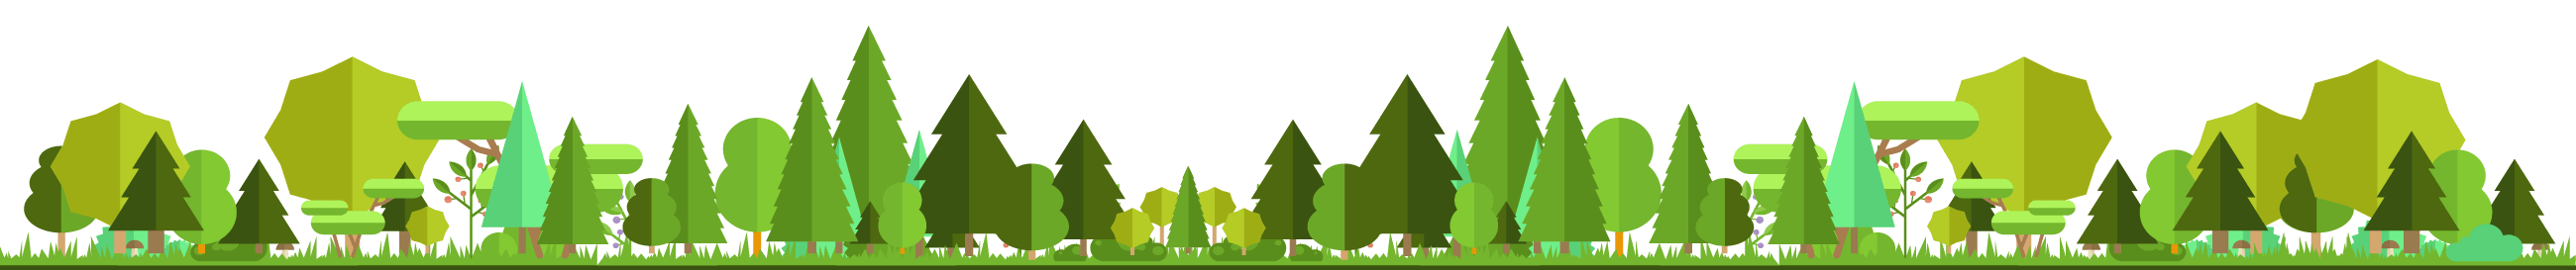 Vektor Illustration bestehend aus unterschiedlichen Baumarten und Büschen